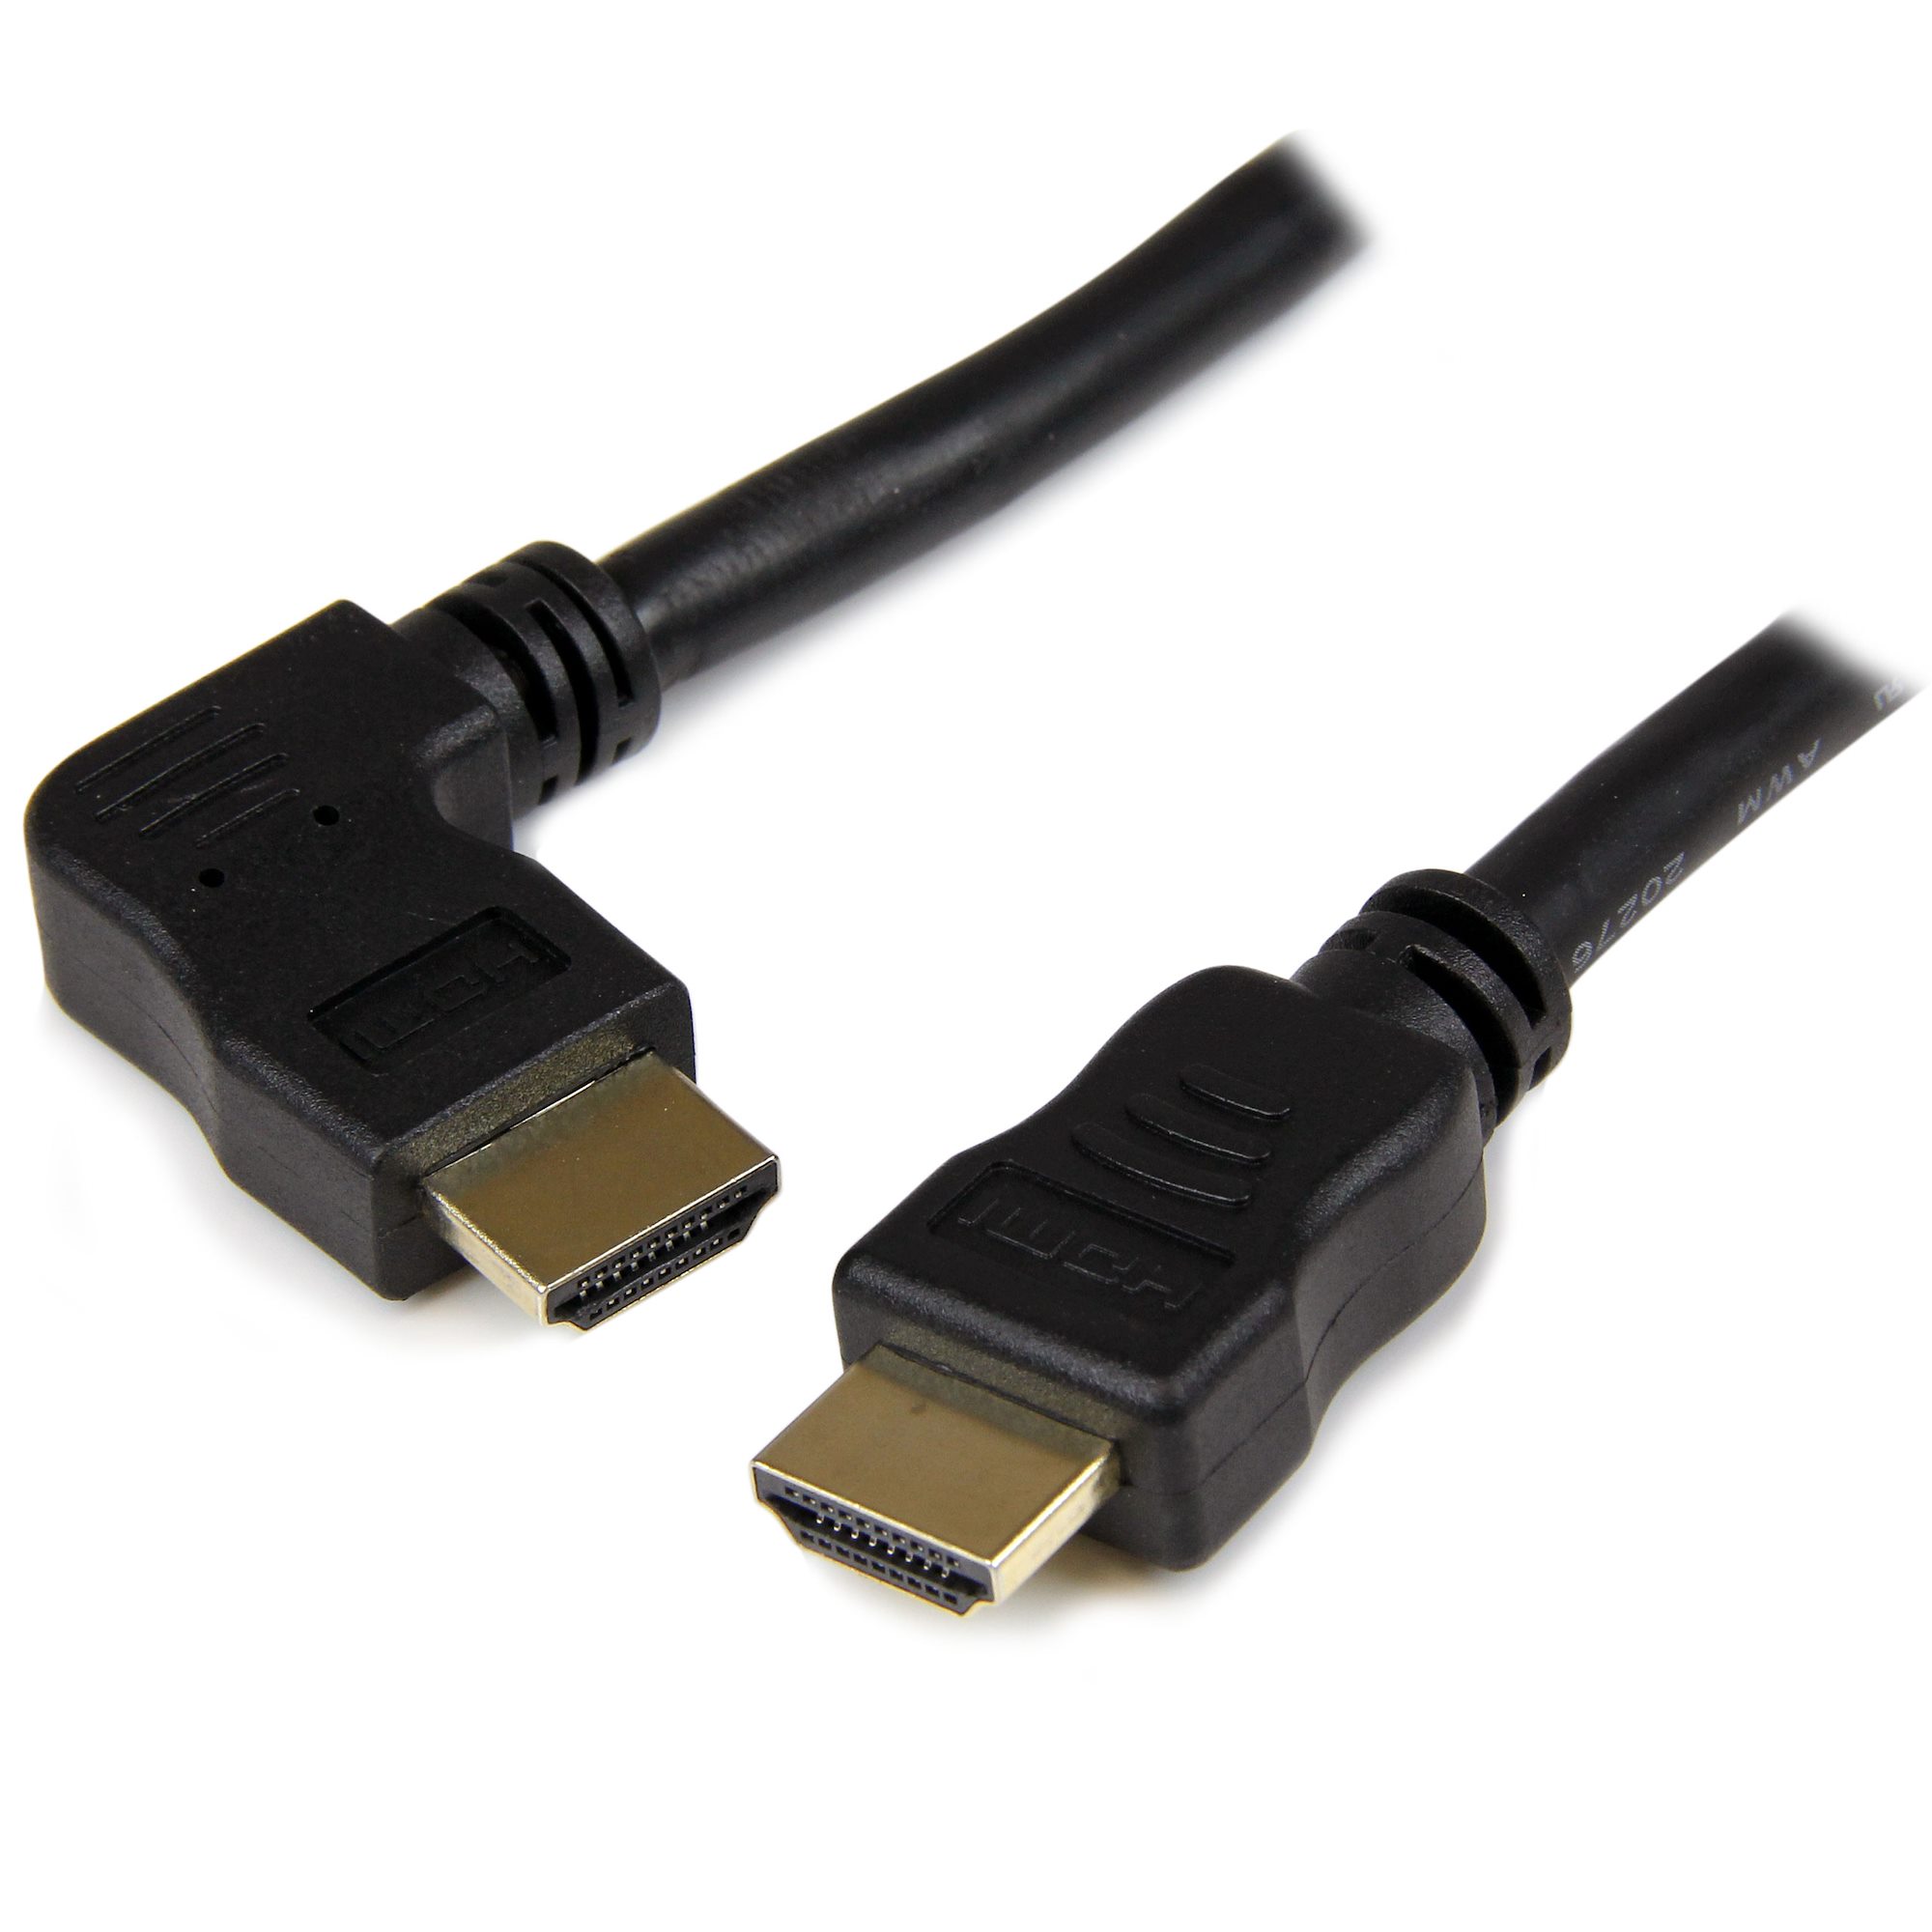 Câble HDMI 1.4 Mâle Coudé Gauche vers Mâle Coudé Droit High Speed